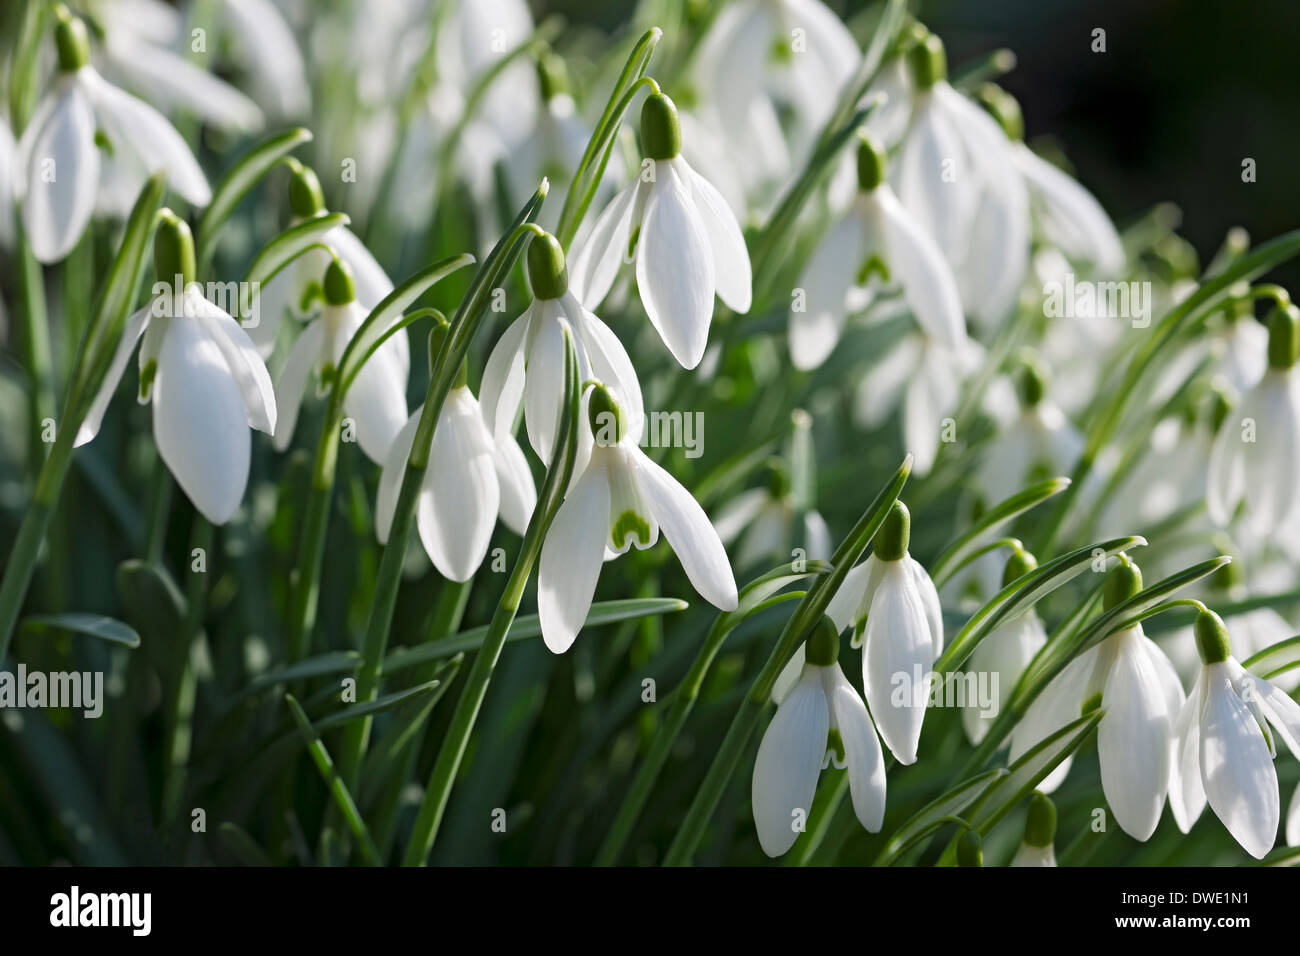 Gros plan de Snowdrops fleurs blanches de Snowdrop dans le jardin en hiver Angleterre Royaume-Uni Royaume-Uni Grande-Bretagne Banque D'Images